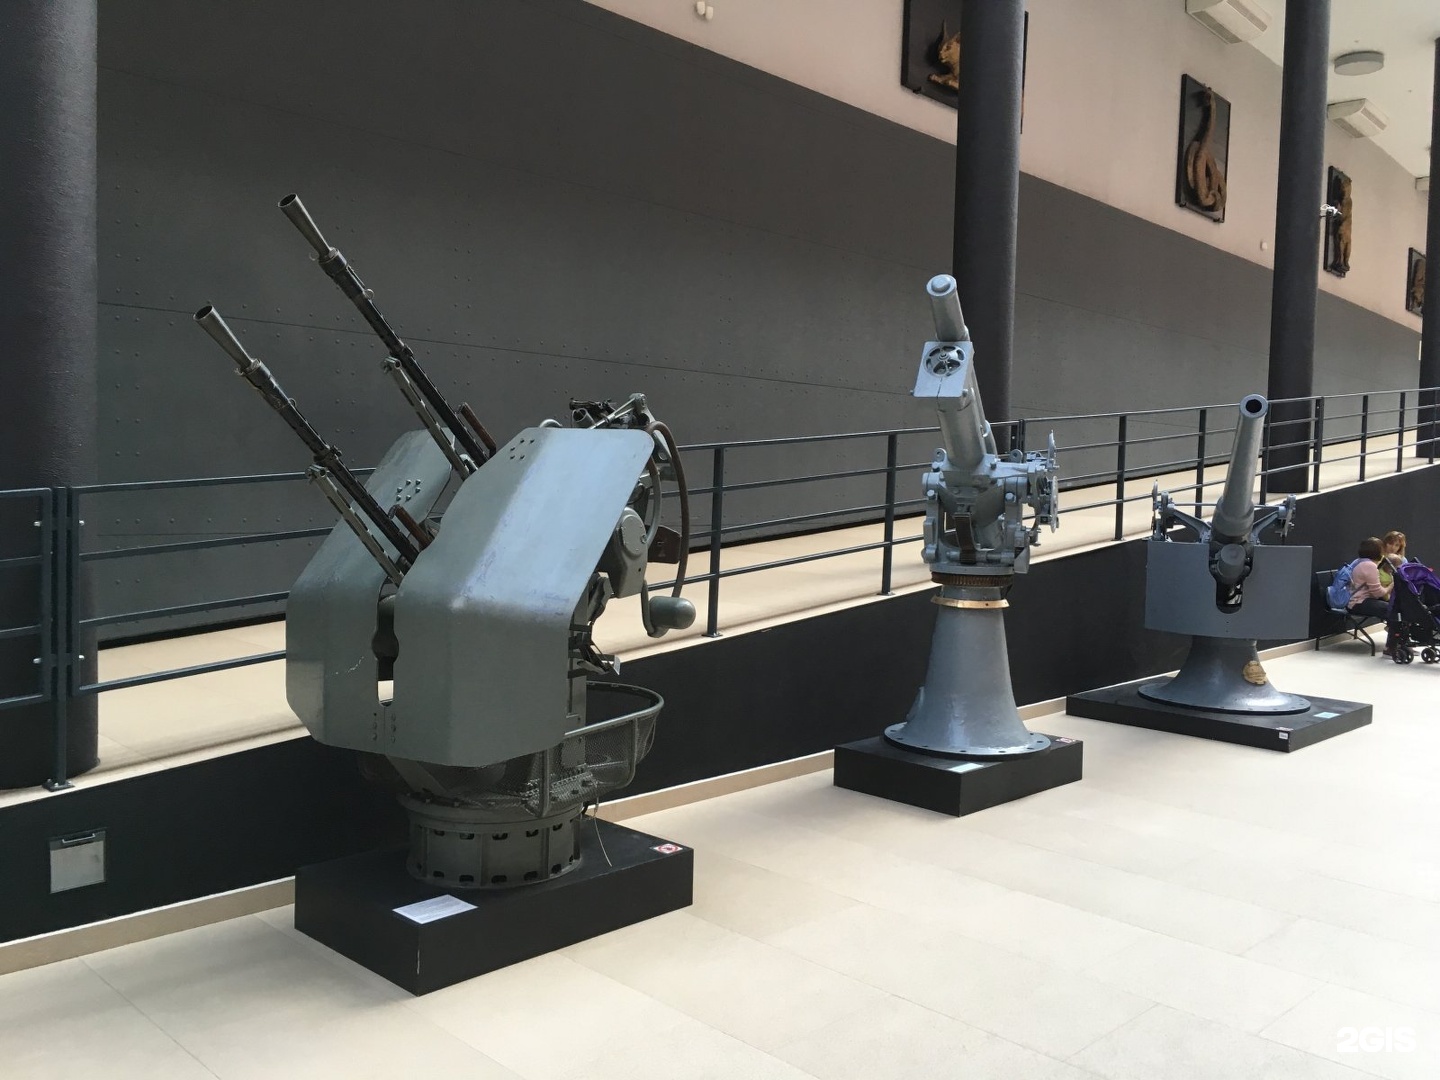 военно морской музей в санкт петербурге